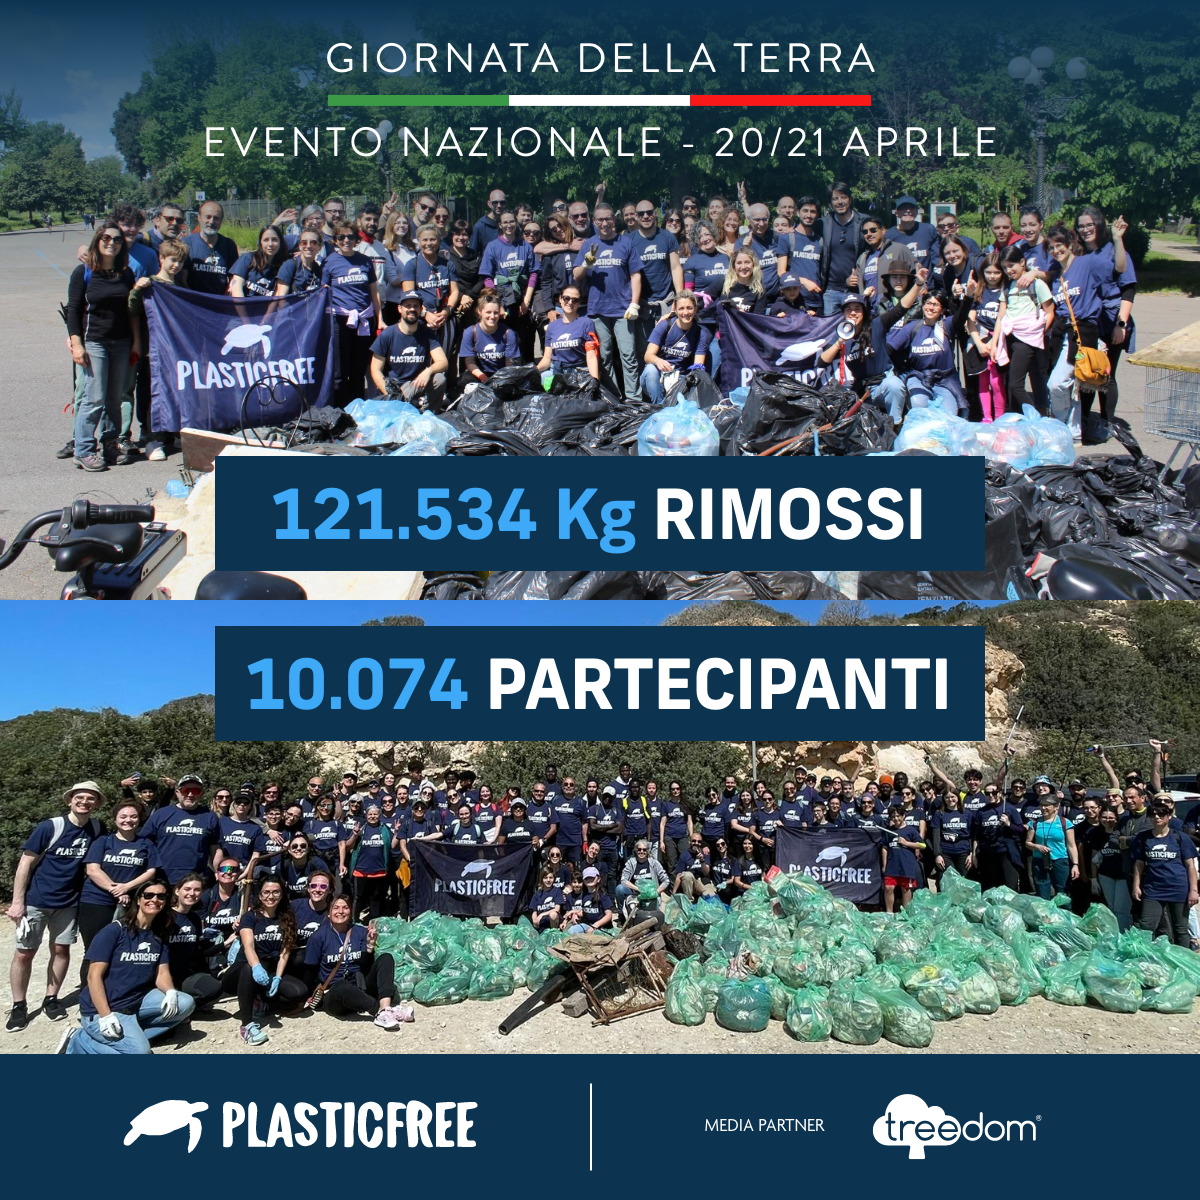 Campania: Plastic Free, Earth Day, rimosse 7 tonnellate di plastica e rifiuti